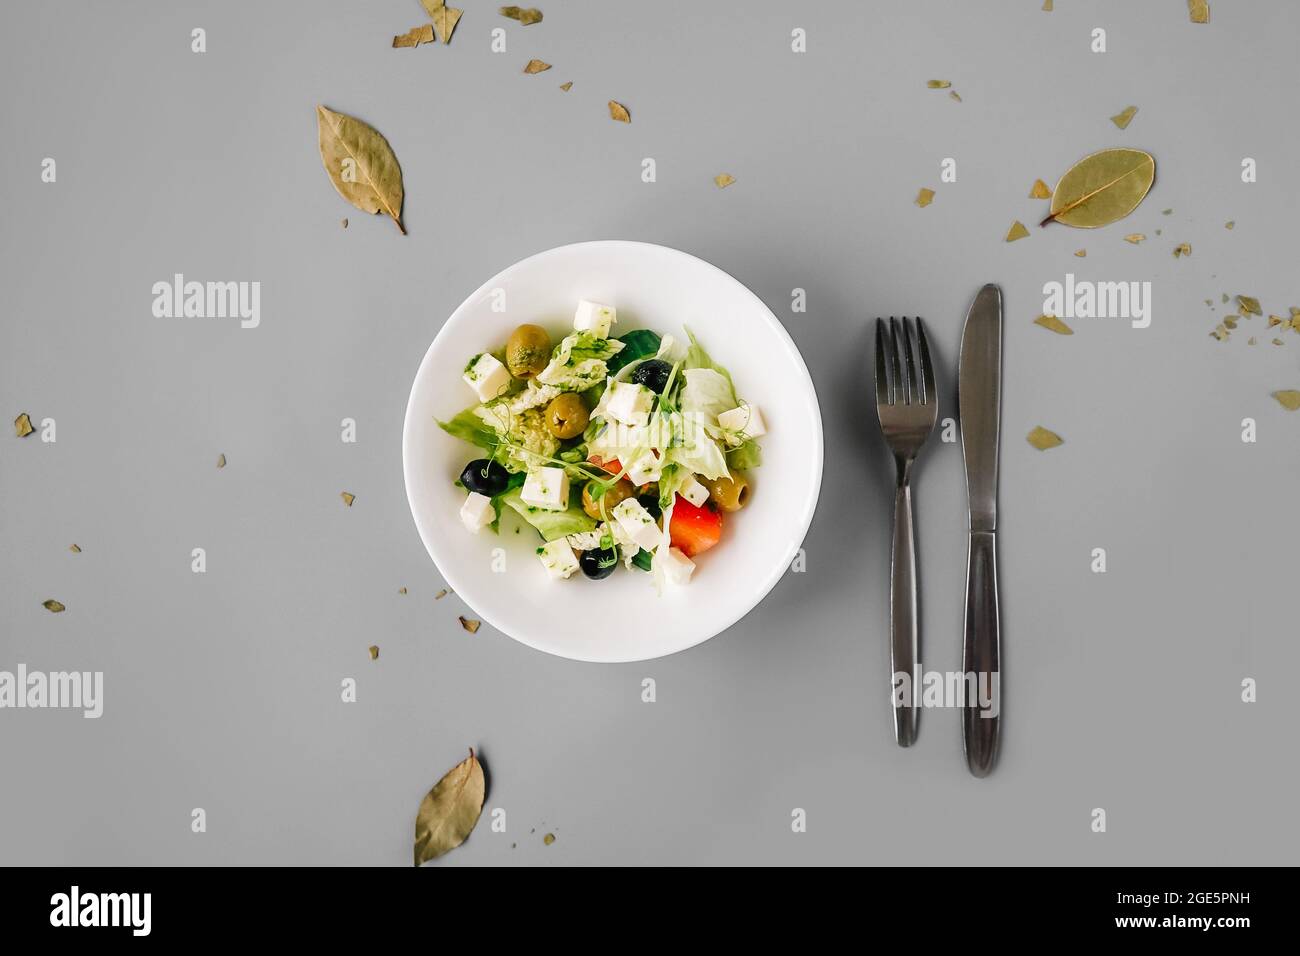 Salade grecque sur fond gris Uni. Microgreen frais sur salade. Banque D'Images